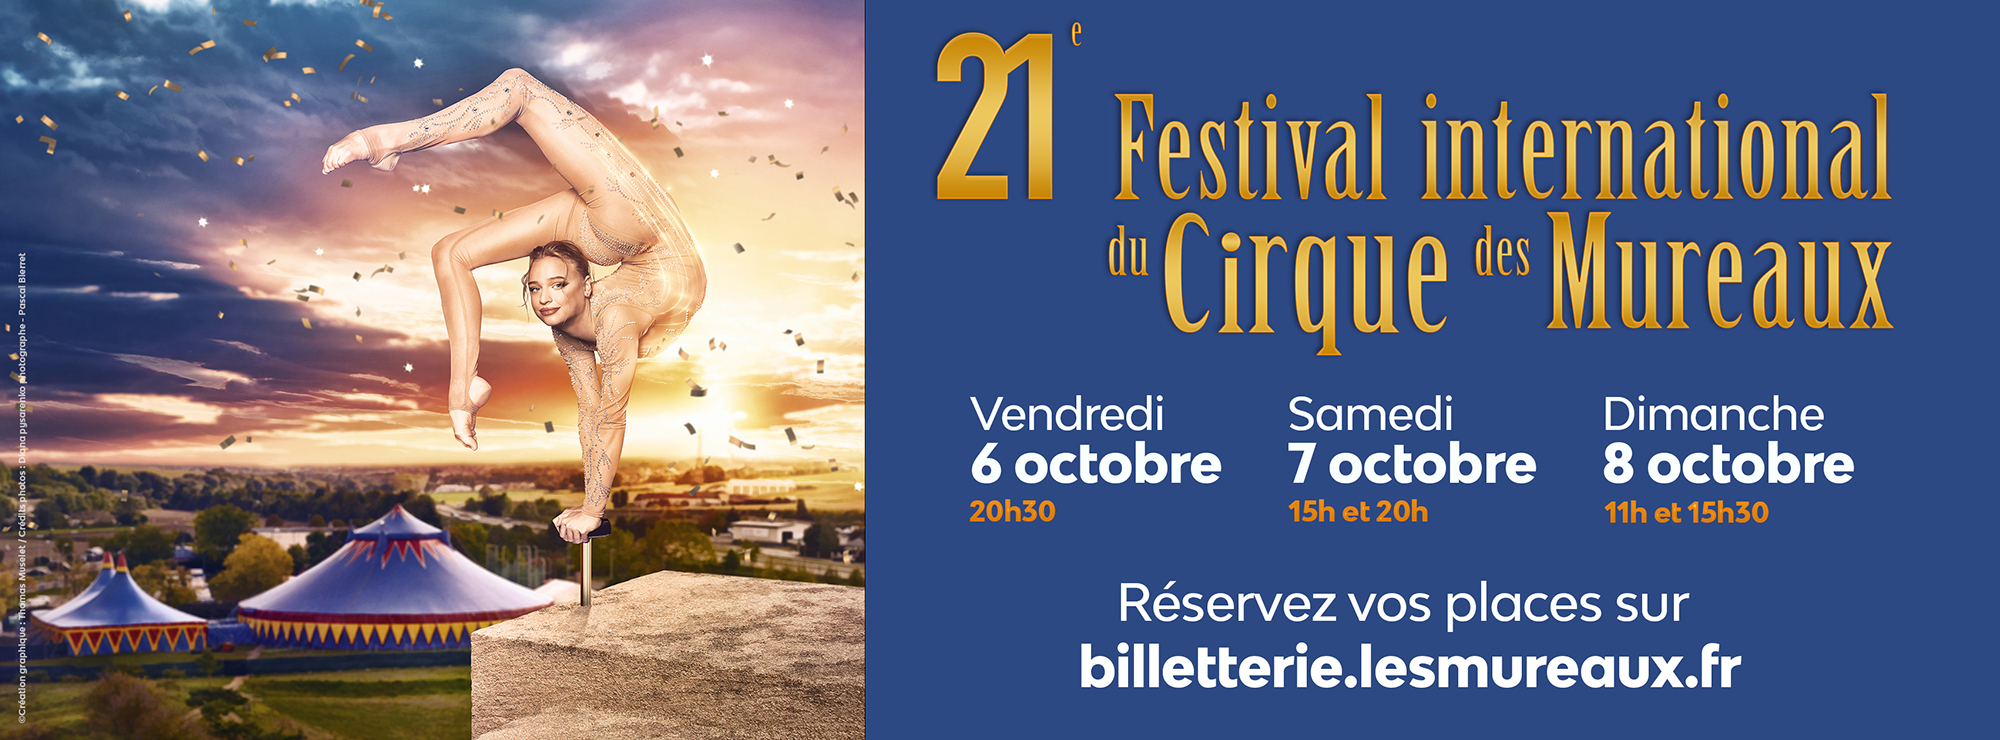 21e Festival international du Cirque des Mureaux